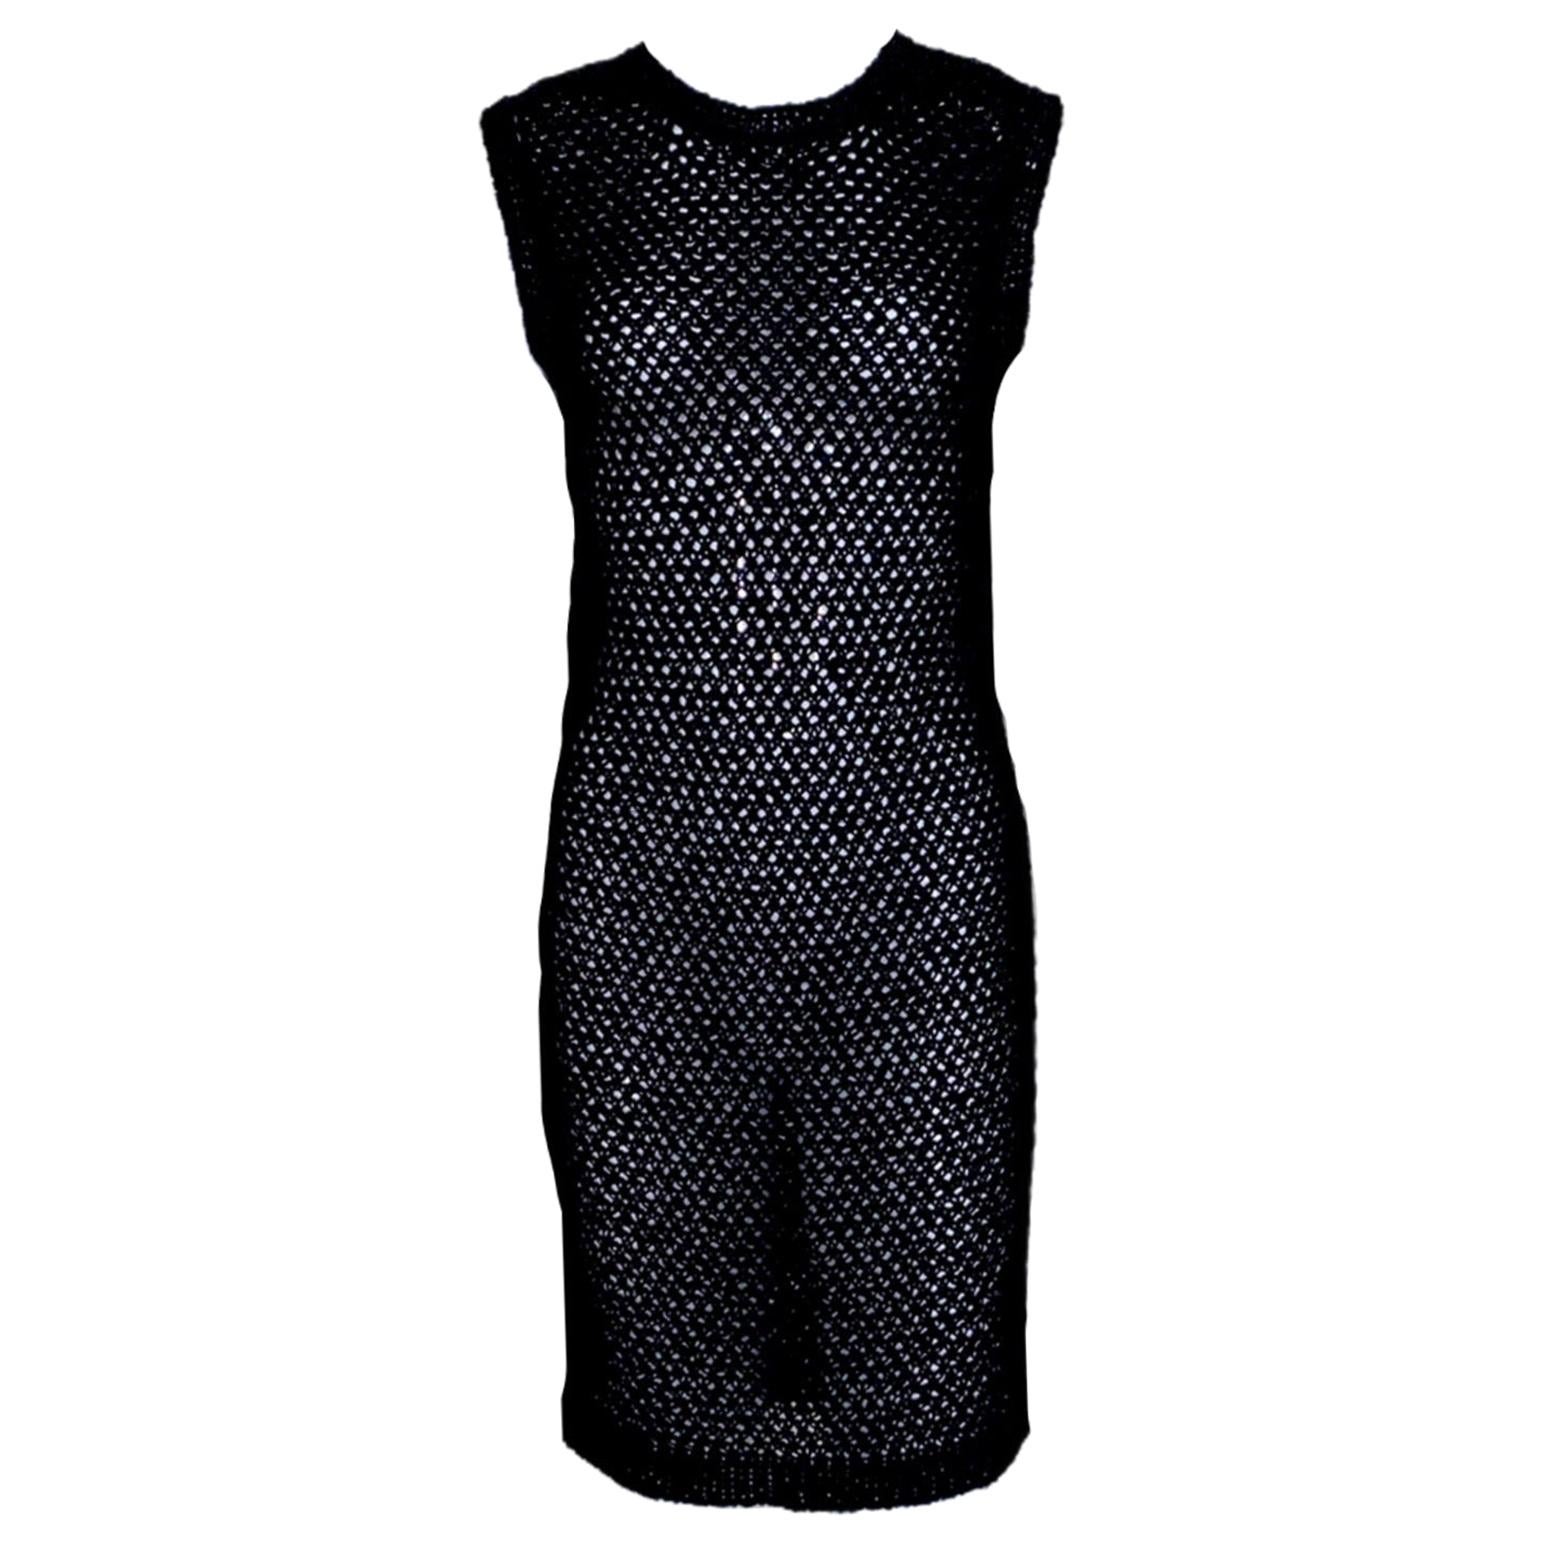 NEW Chanel Black Crochet Knit Woven Dress 42